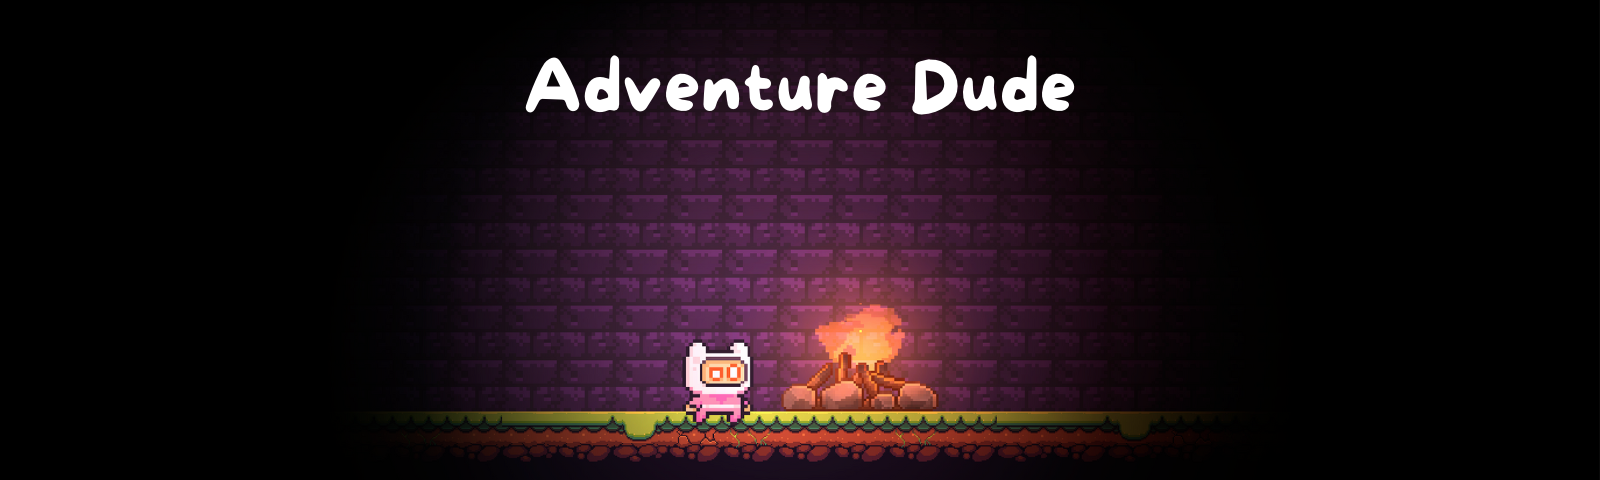 Adventure Dude